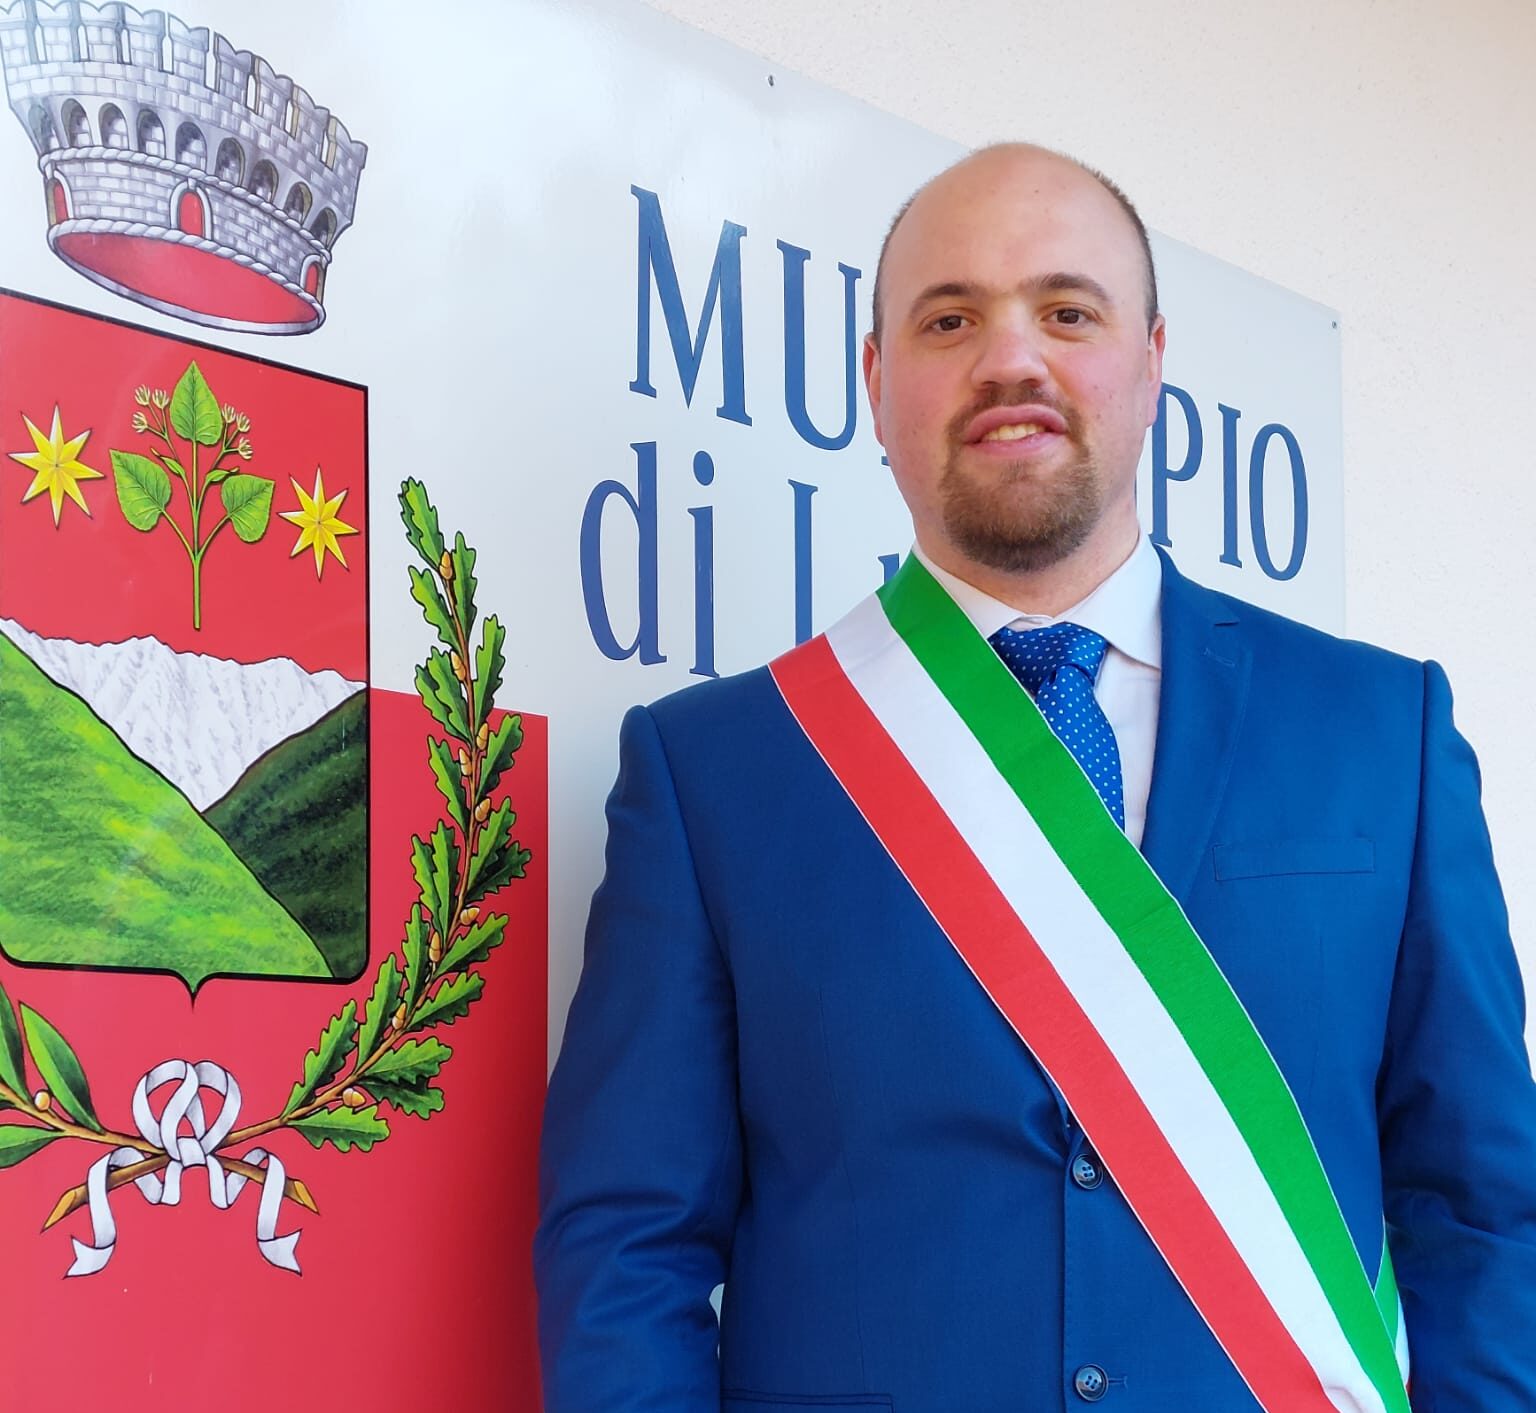 Direzione Treviso, Paoloni (sindaco Lusevera): “Relazione città-montagna è un tema cruciale”